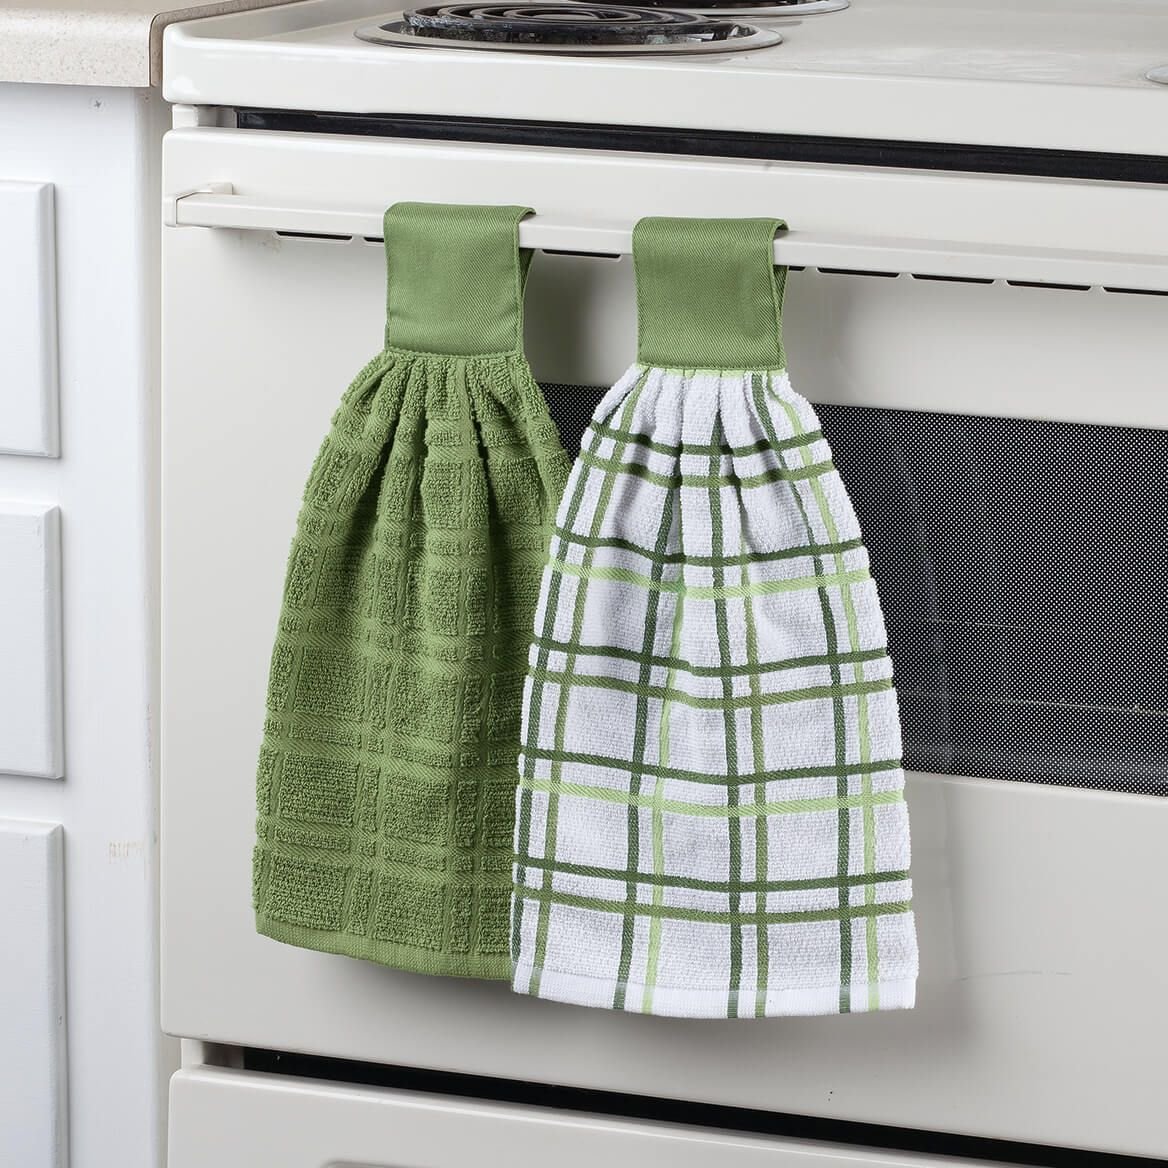 Красивые полотенце своими руками. Красивые кухонные полотенца. Шьем кухонные полотенца. Красивые полотенца для кухни. Дизайнерские кухонные полотенца.